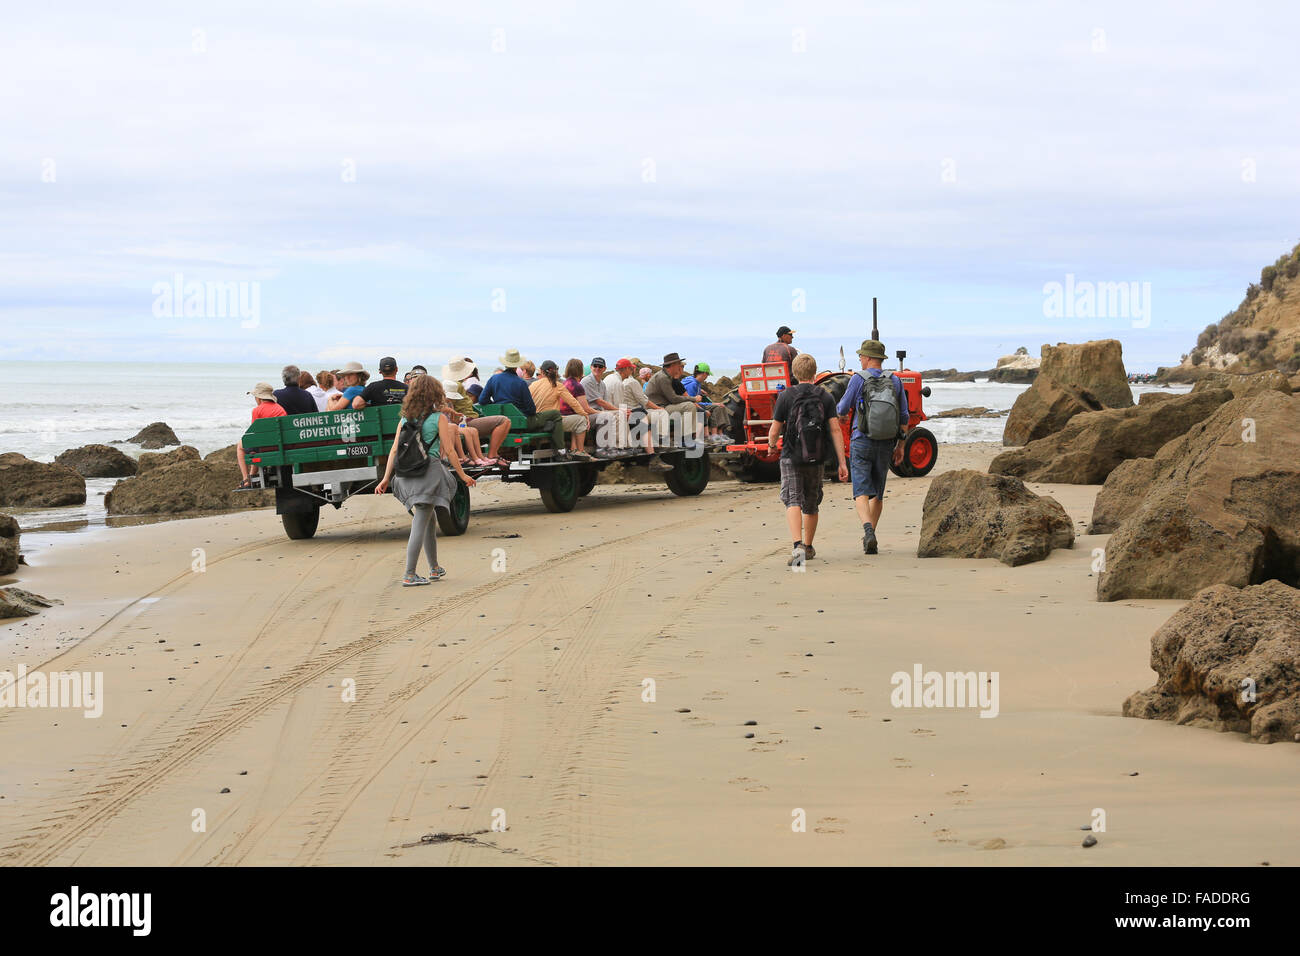 Gannett Beach avventure trattore e i carri con i turisti diretti verso la Gannet colonia. Foto Stock